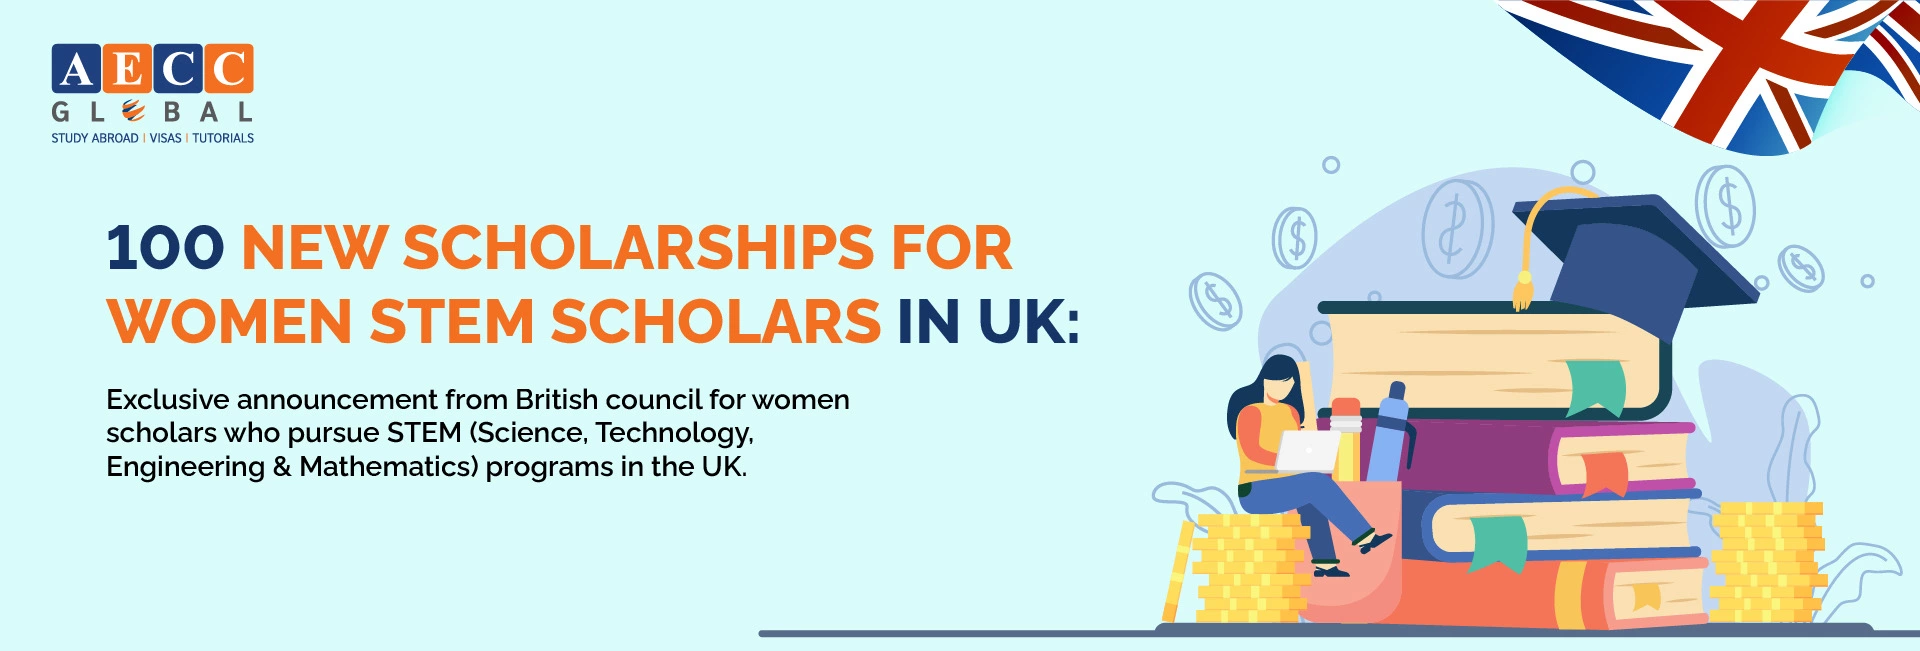 100 Scholarships in UK for Women STEM Scholars